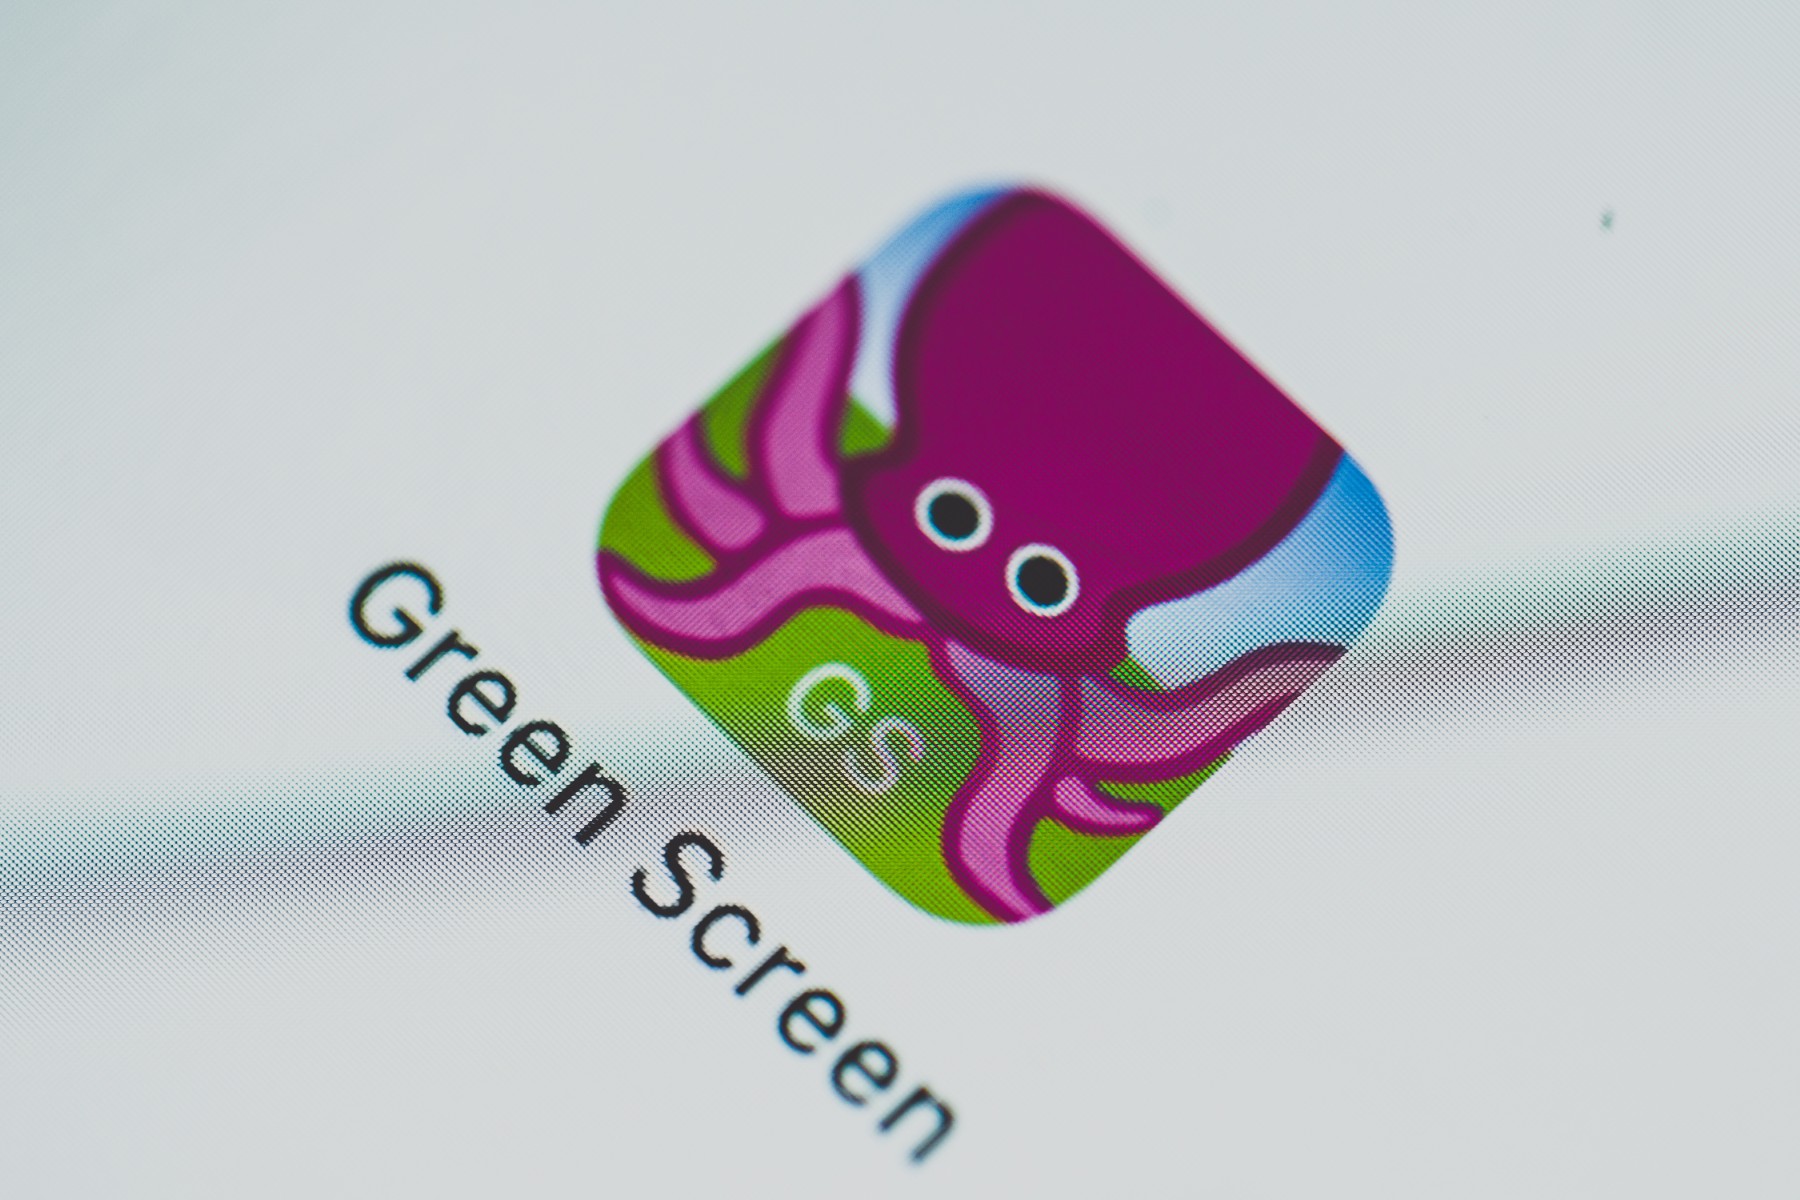 Das iPad als Unterrichtswerkzeug – Arbeiten mit Greenscreen